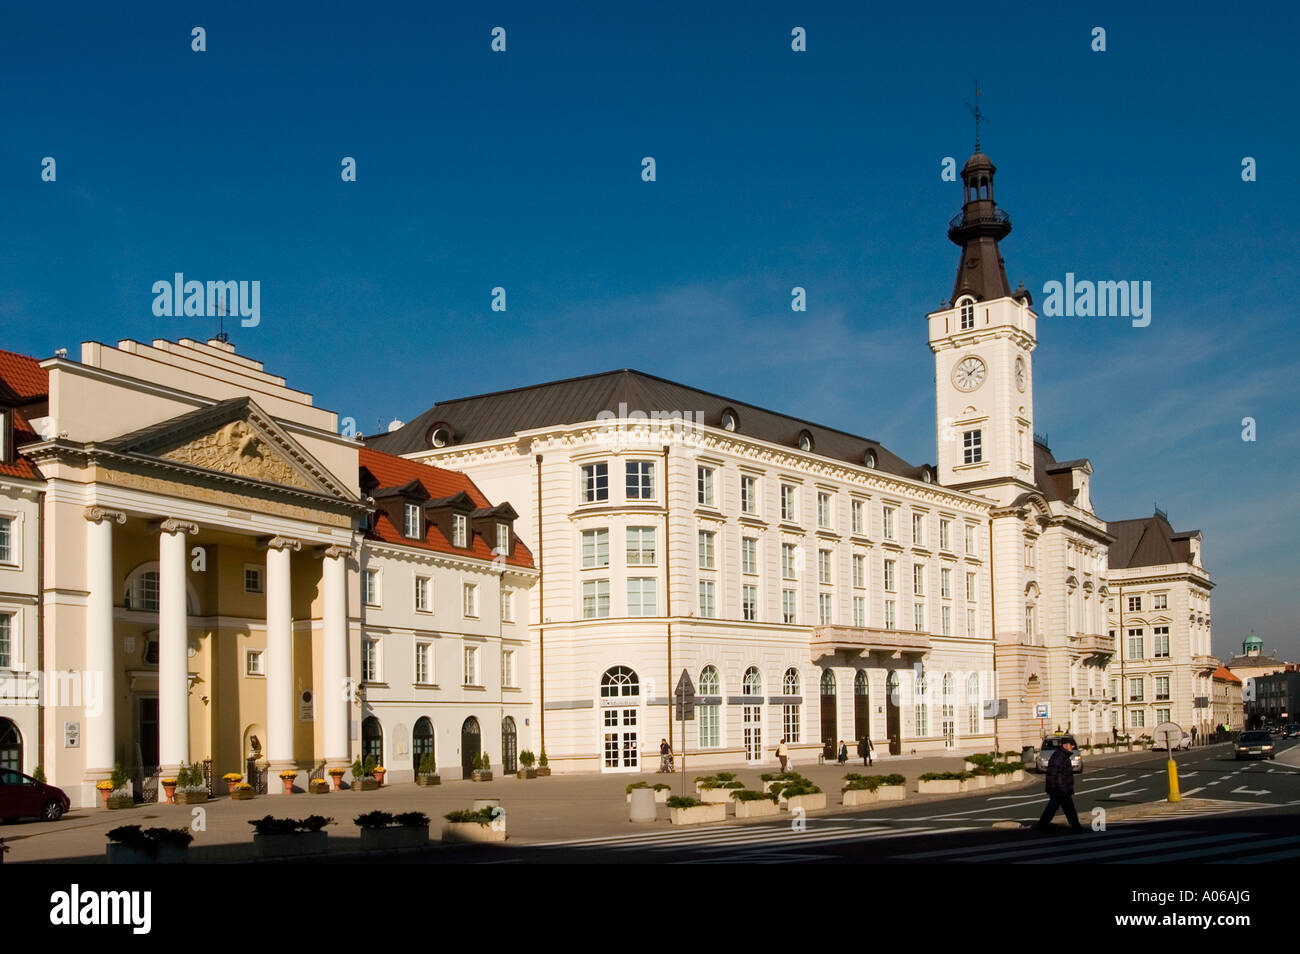 Église patrimoniale de St Albert et St Andrew et de la mairie de la Place du Théâtre Plac Teatralny Varsovie Pologne Banque D'Images